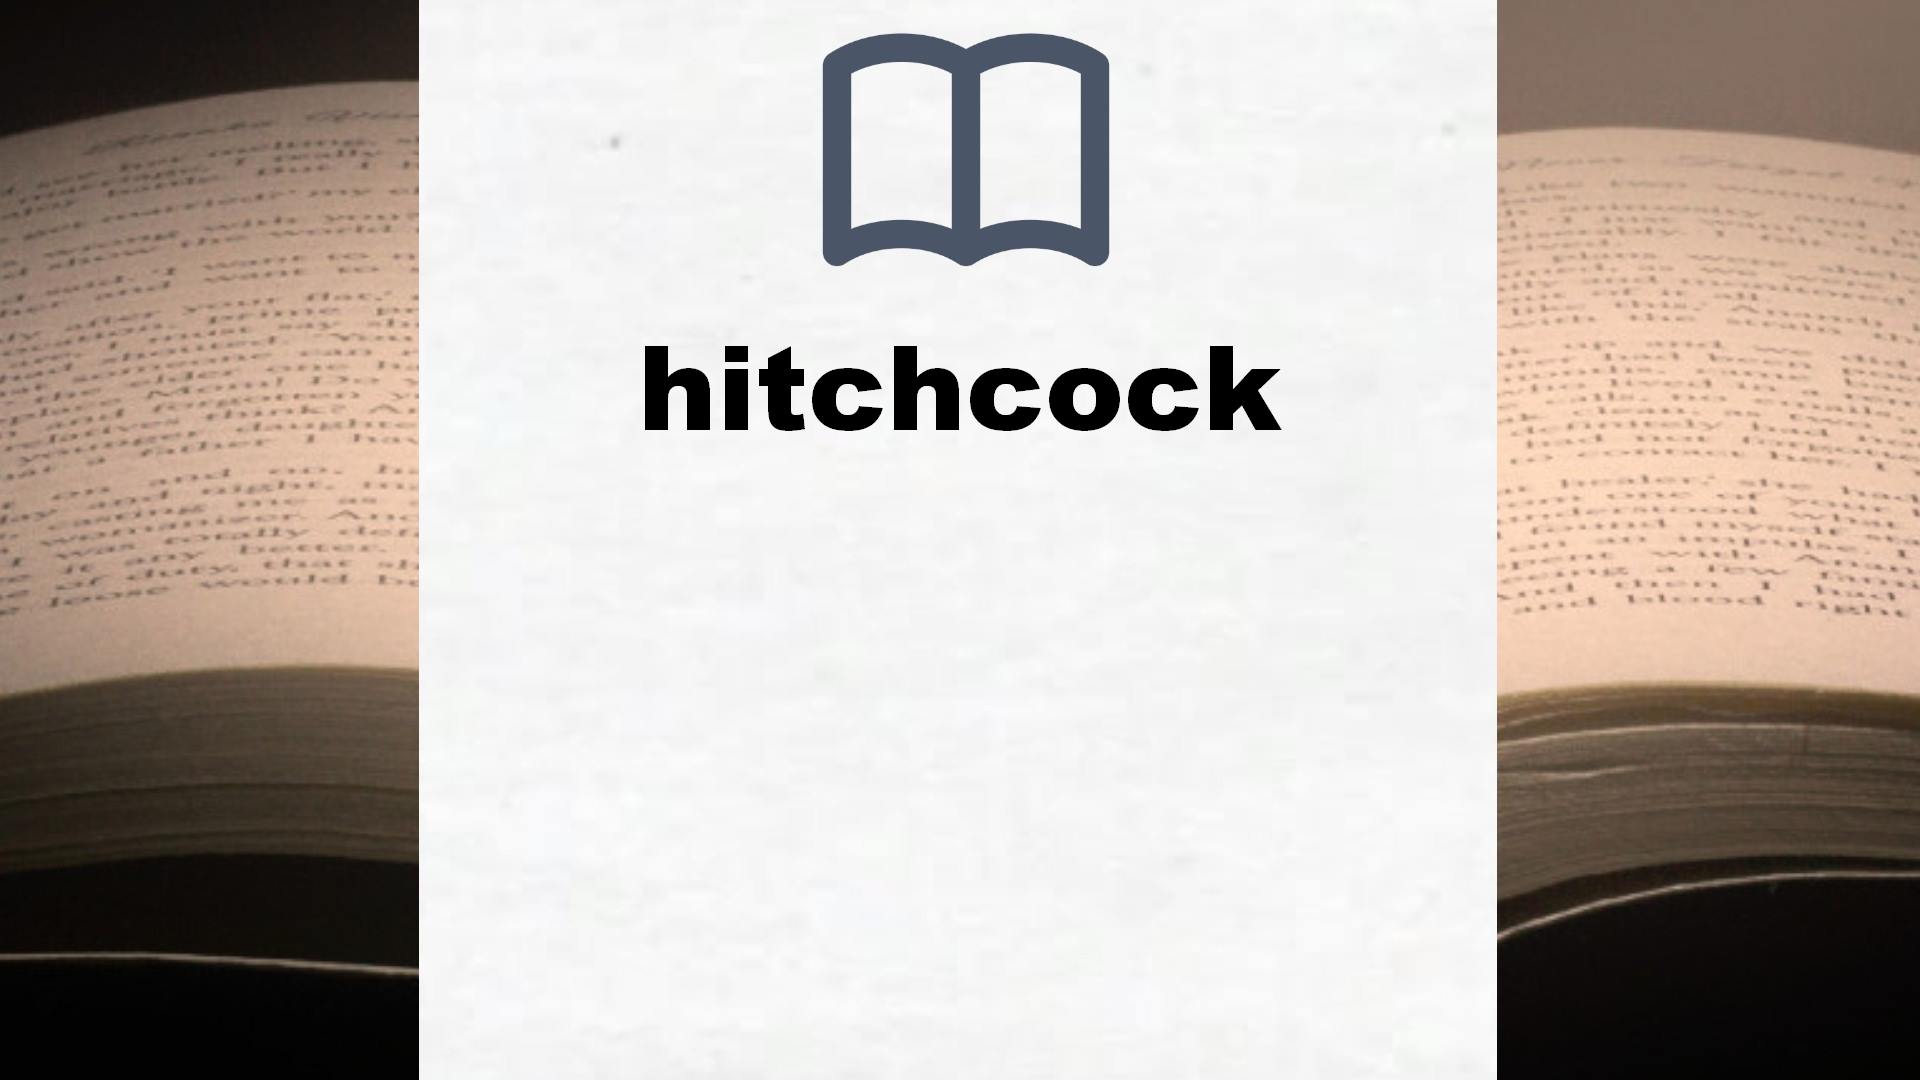 Libros sobre hitchcock